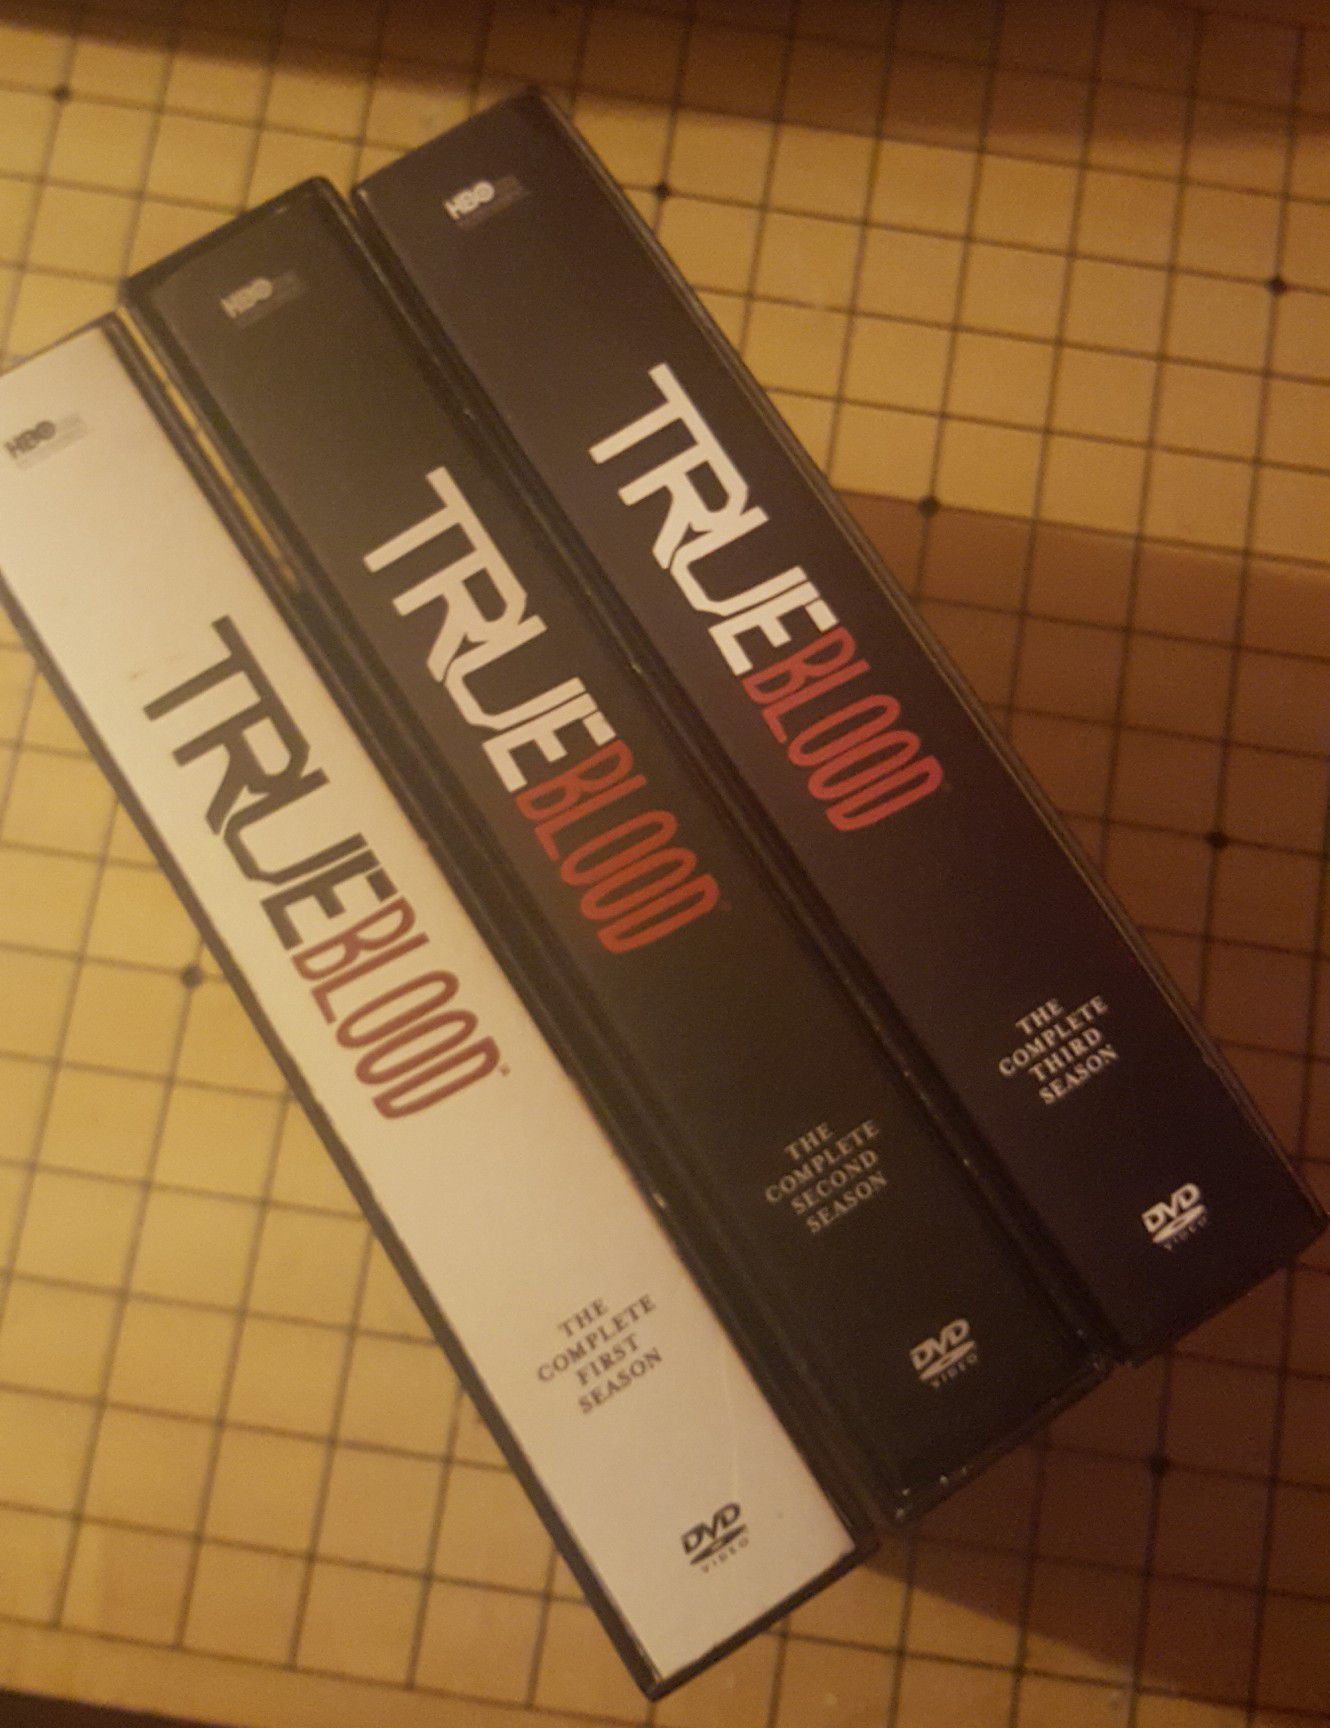 TRUE BLOOD (3 SEASONS!!!) HBO * DVD * VAMPIRES